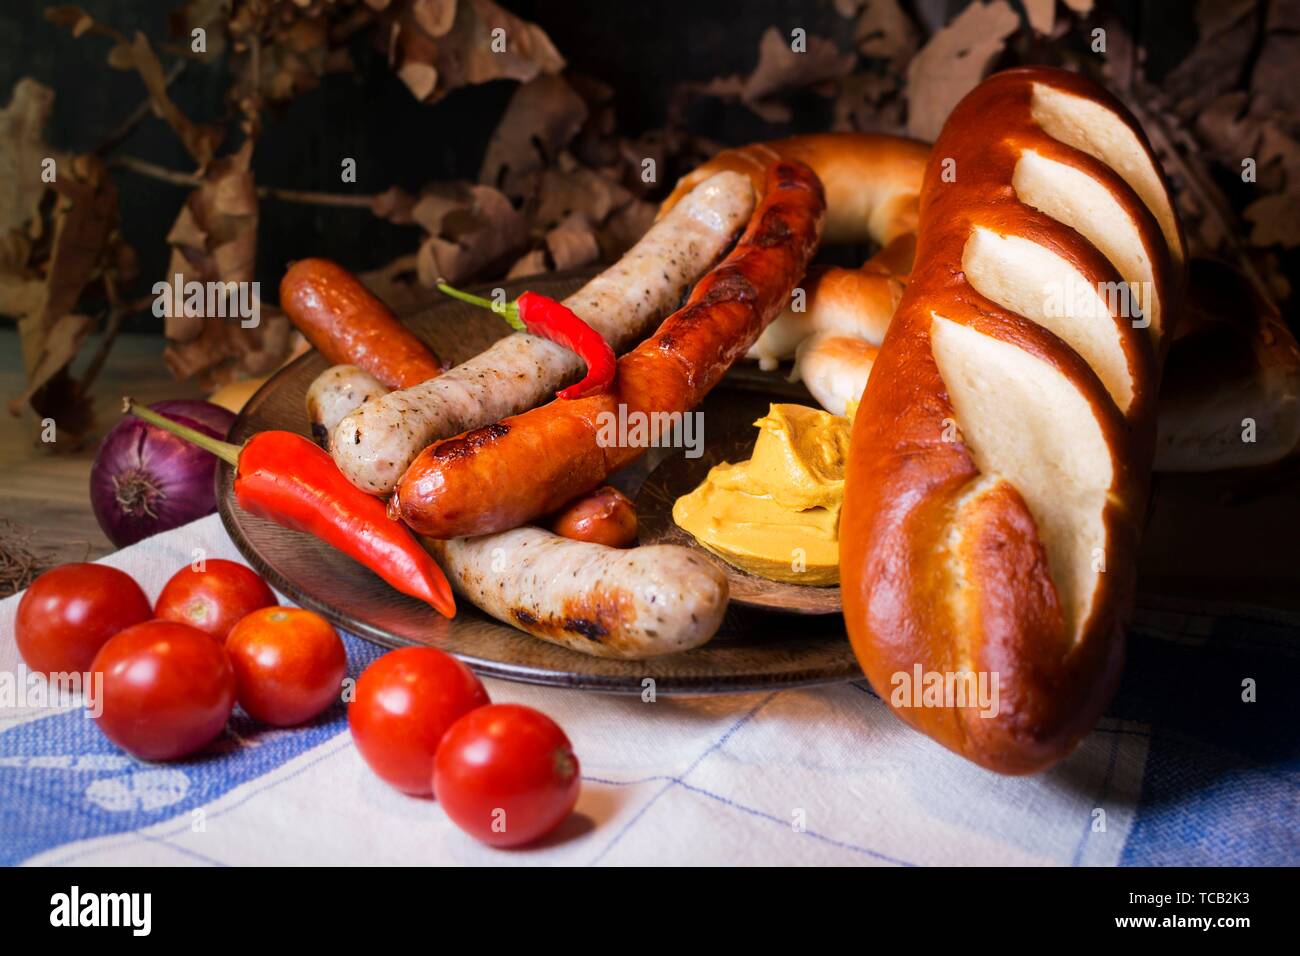 Blanc et Rouge Bavaroise saucisses avec de la moutarde, des brioches et des bretzels bavarois à la table. Octobre Fest Concept. Banque D'Images